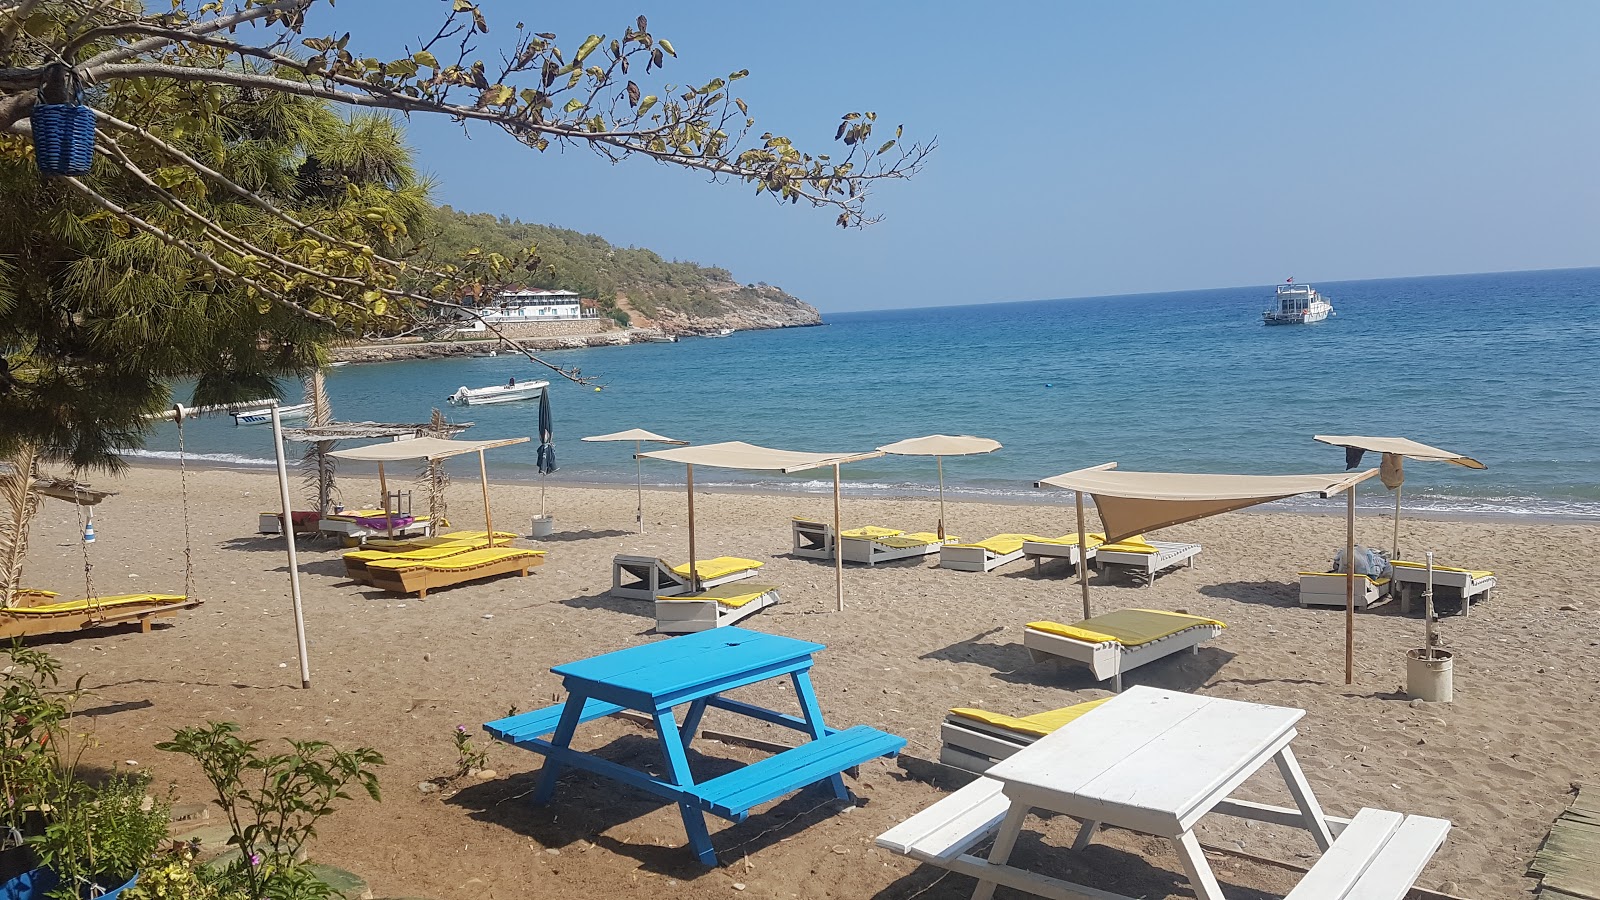 Foto af Buyukeceli beach - populært sted blandt afslapningskendere